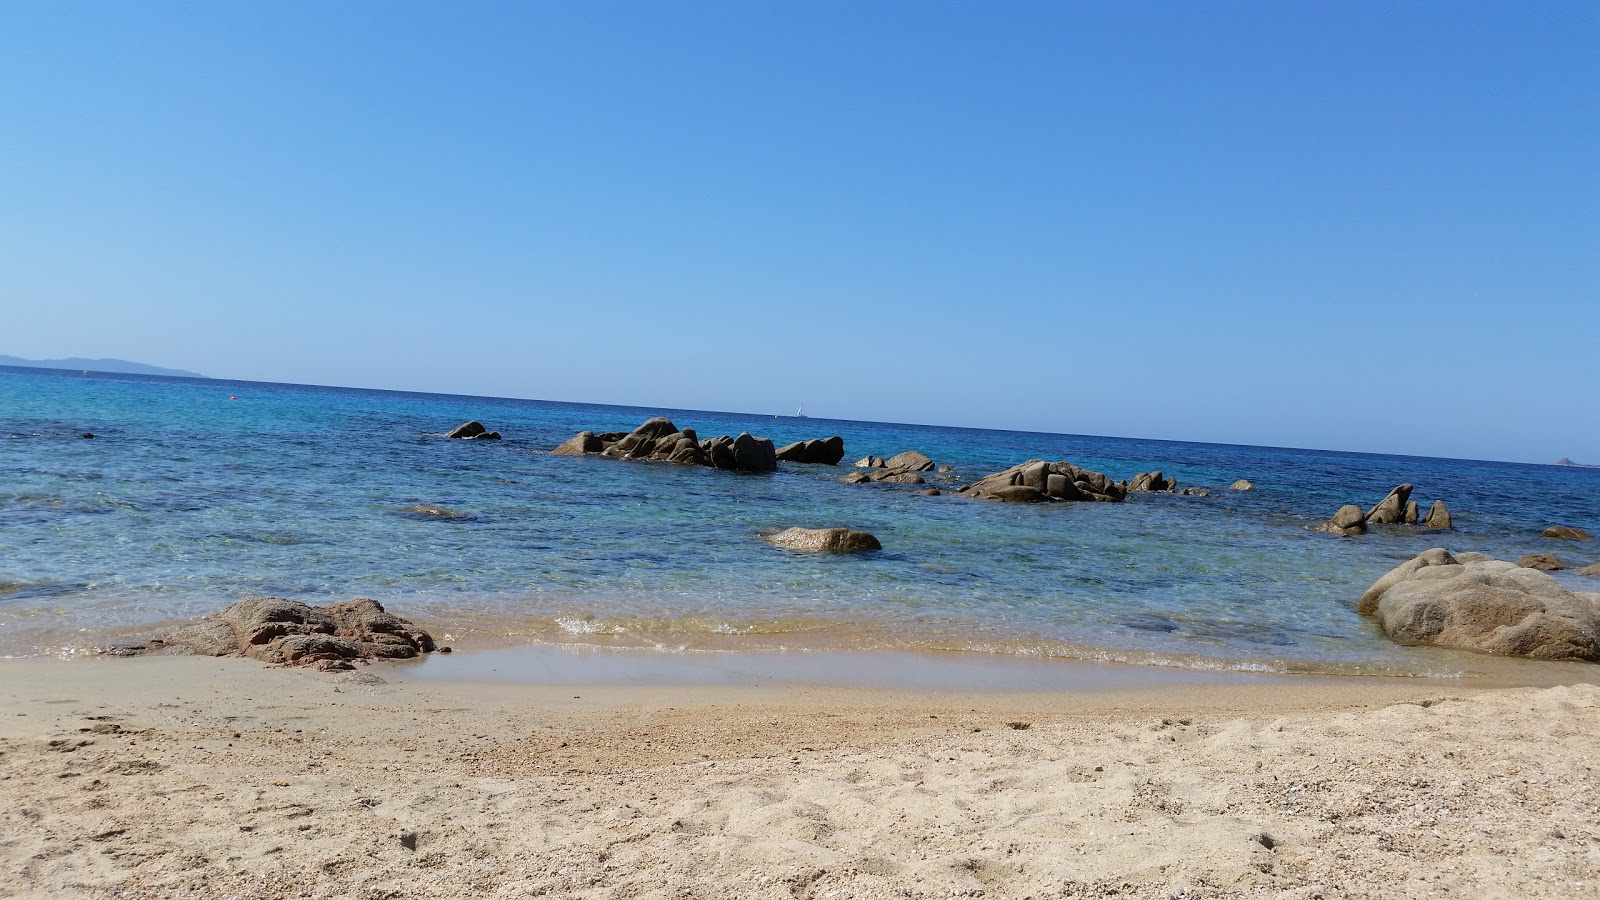 Agosta beach II'in fotoğrafı parlak kum yüzey ile